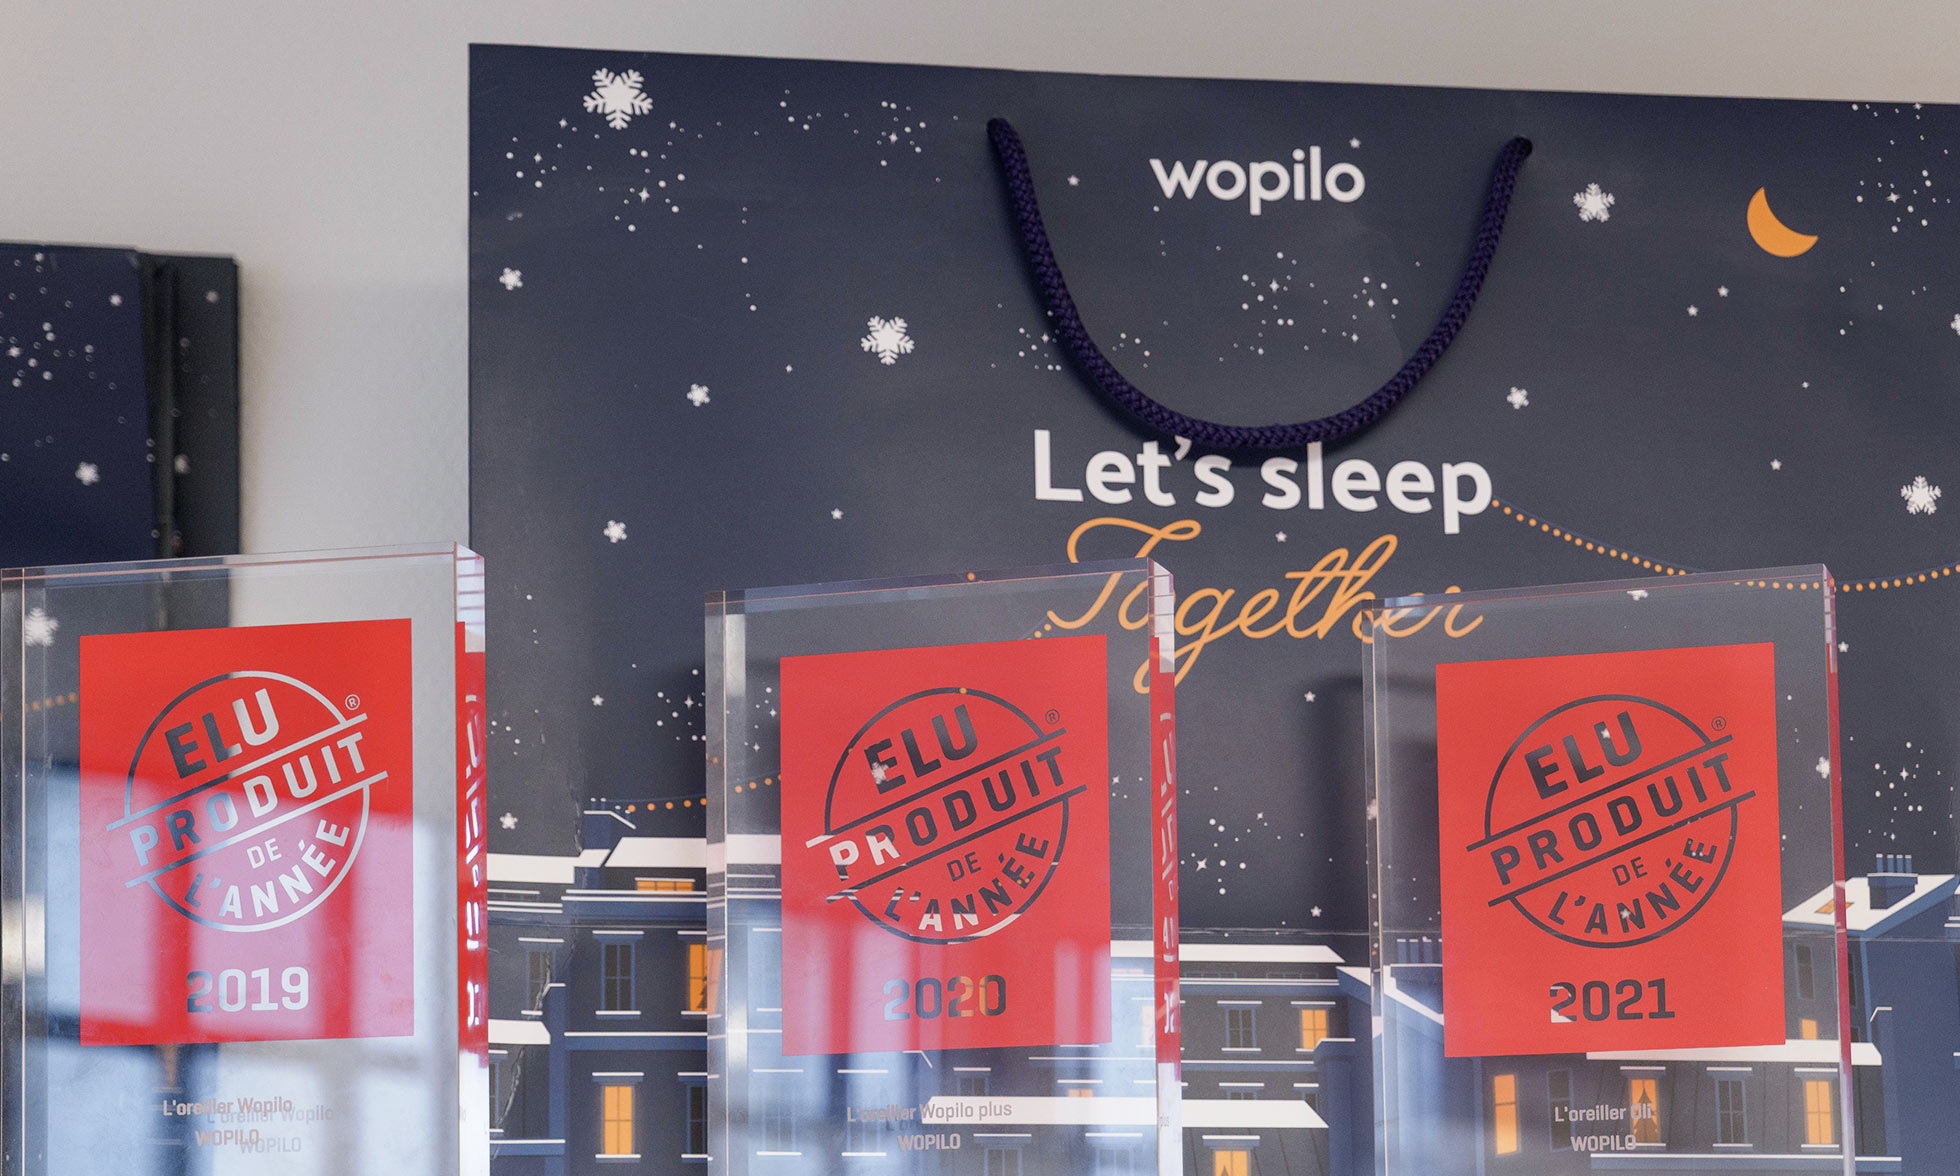 Wopilo, élu trois fois produit de l’année (2019, 2020 et 2021)